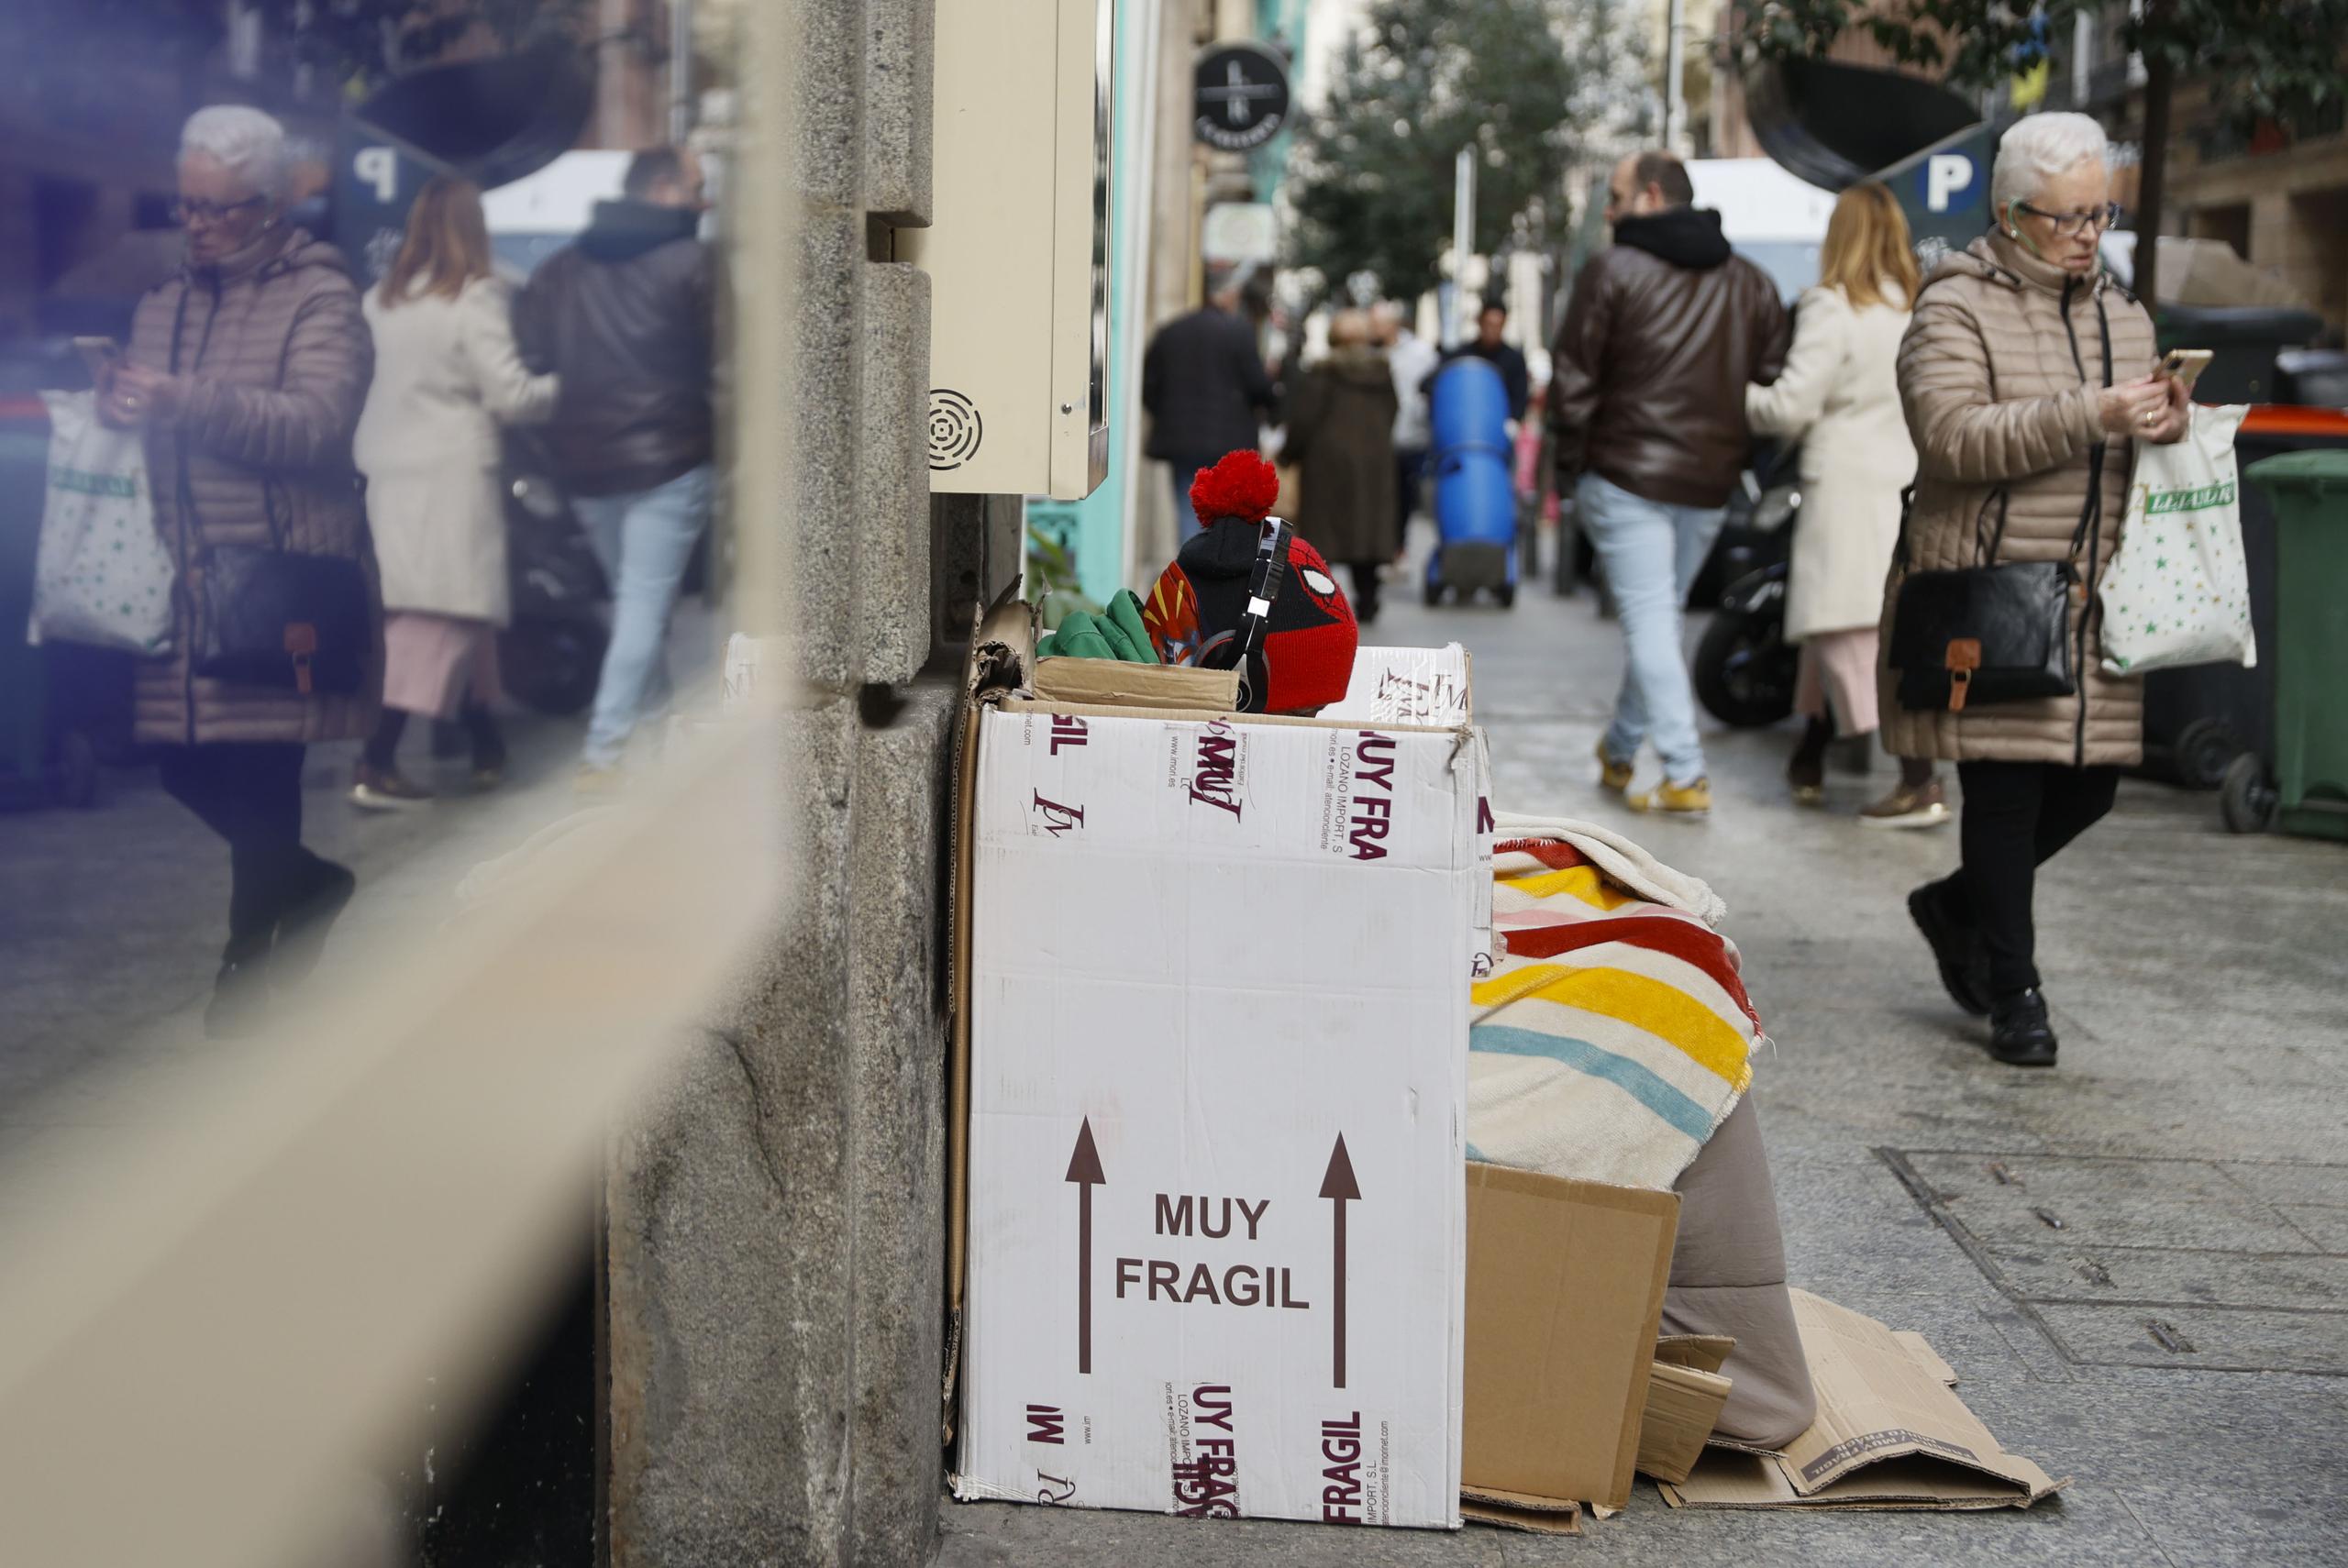 Foto de archivo de una persona sin hogar que se resguarda del frío con cartones en Madrid. EFE/Mariscal
